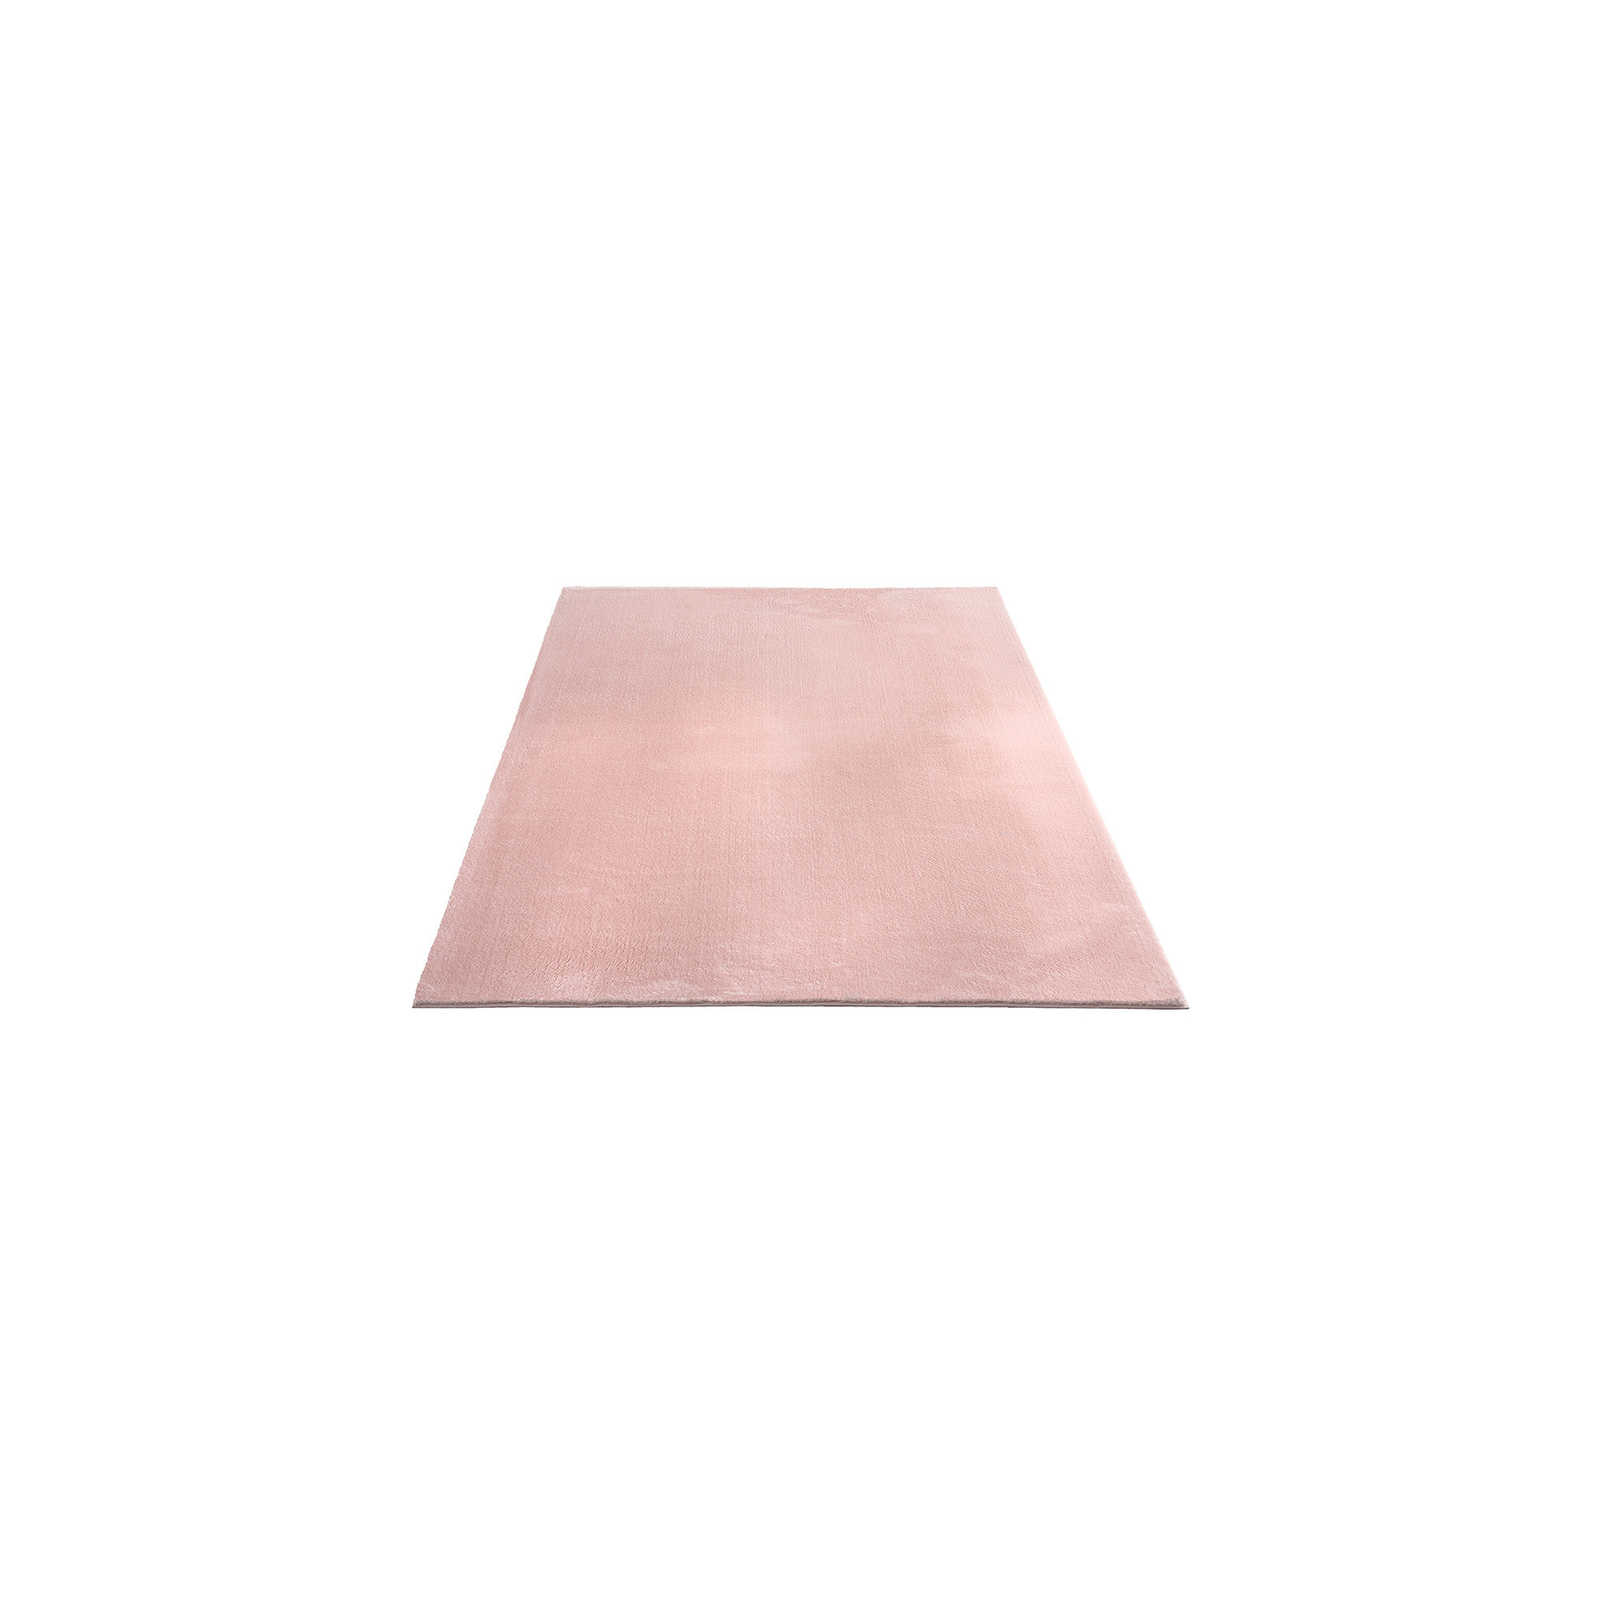 Fijnpolig tapijt in roze - 170 x 120 cm
